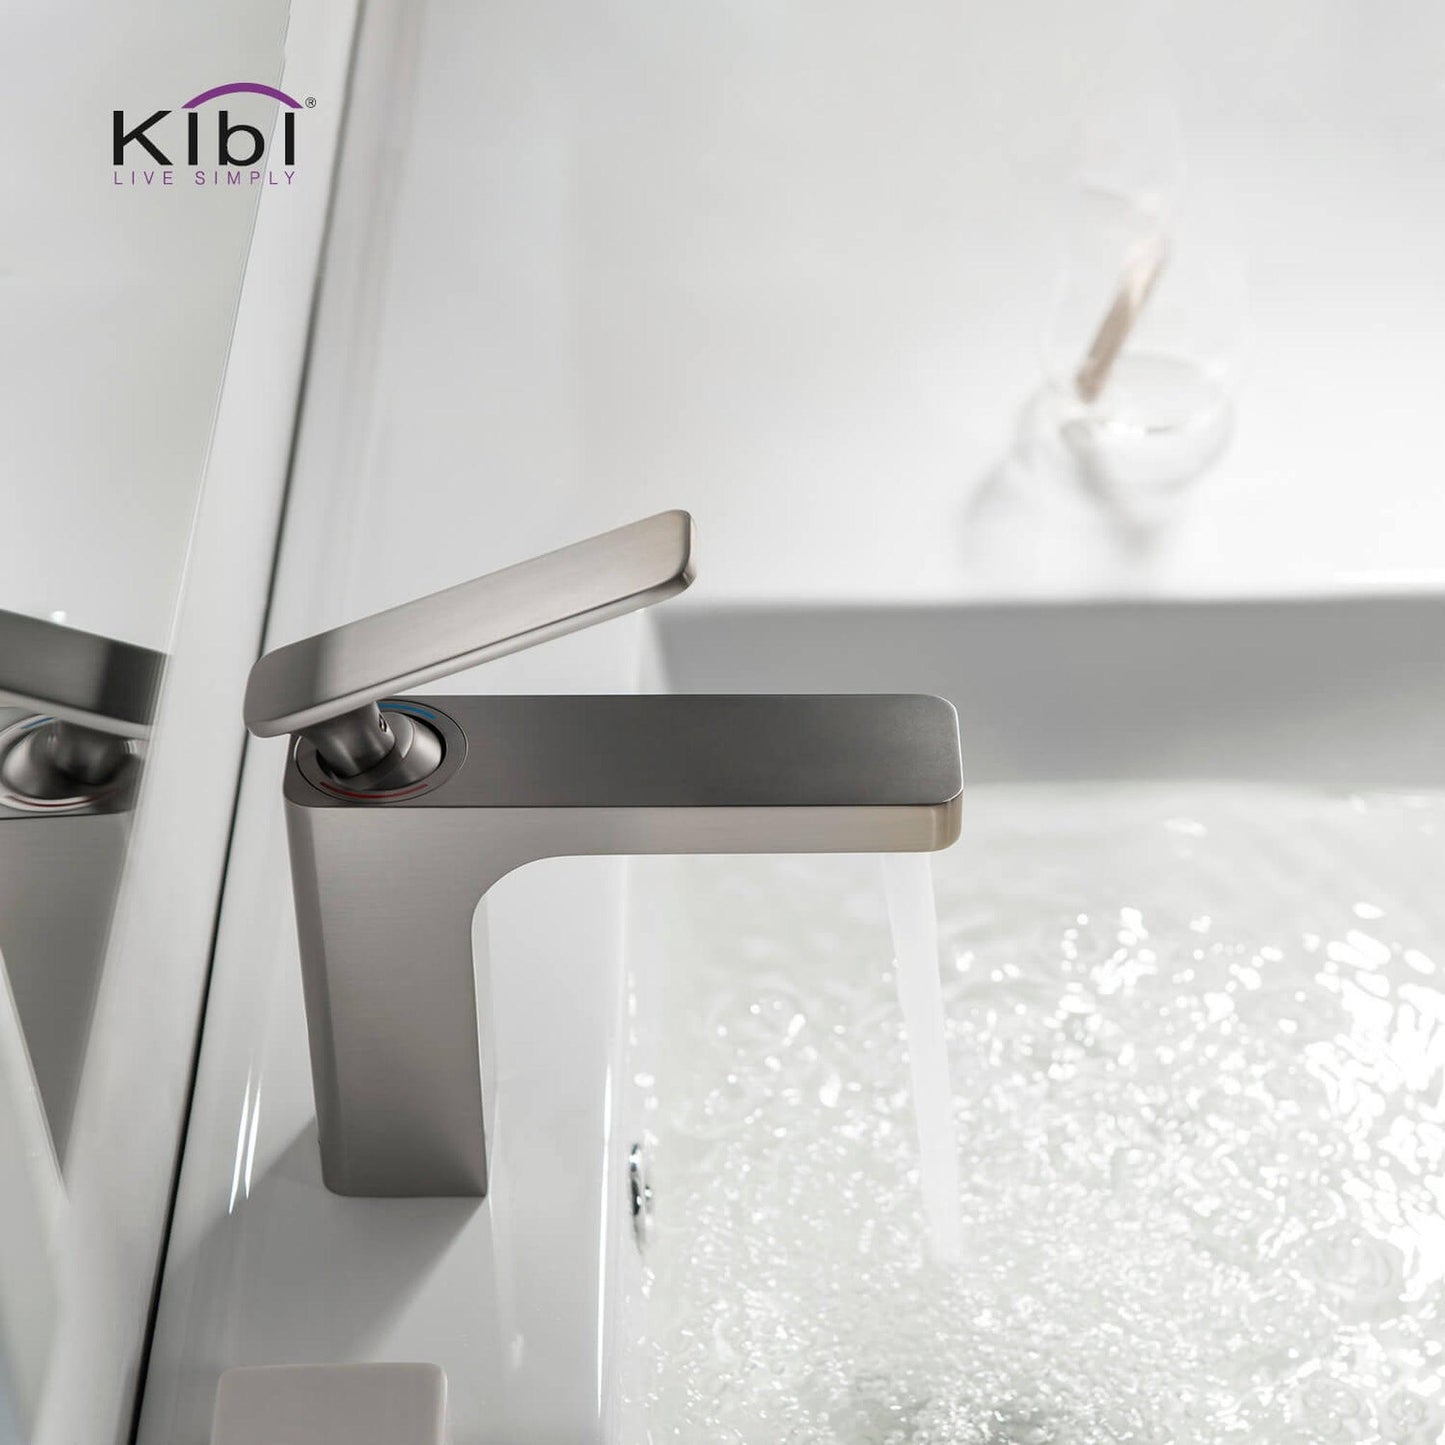 KIBI Infinity Single Handle Brushed Nickel Solid Brass Bathroom Vanity Sink Faucet